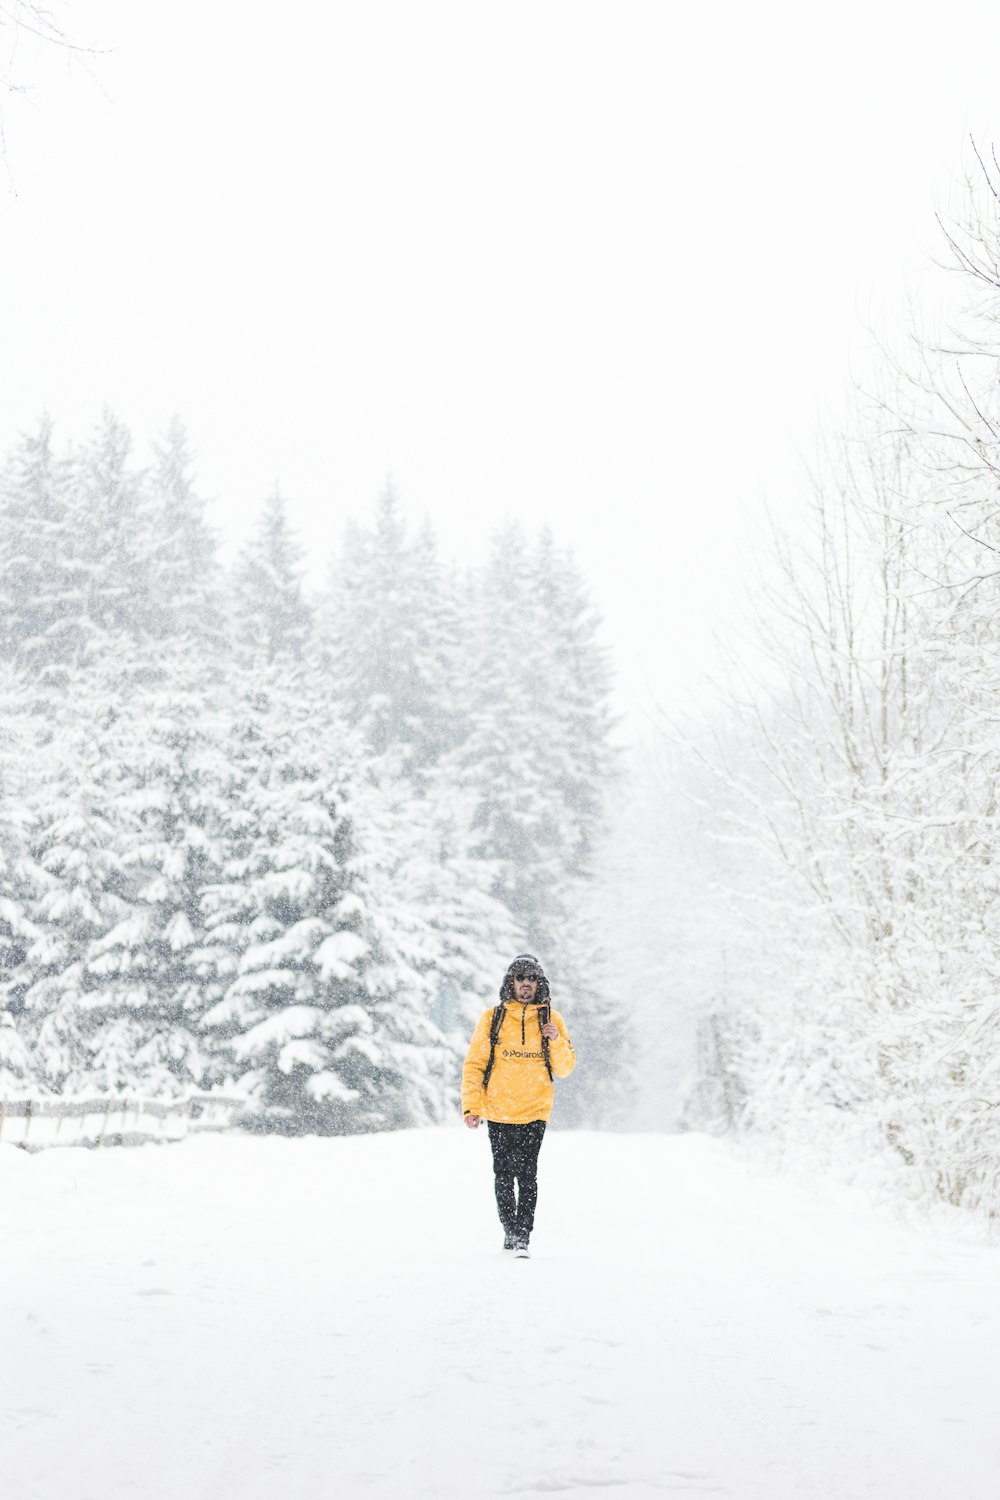 Frau in gelber Jacke und schwarzer Hose, die tagsüber auf schneebedecktem Boden steht